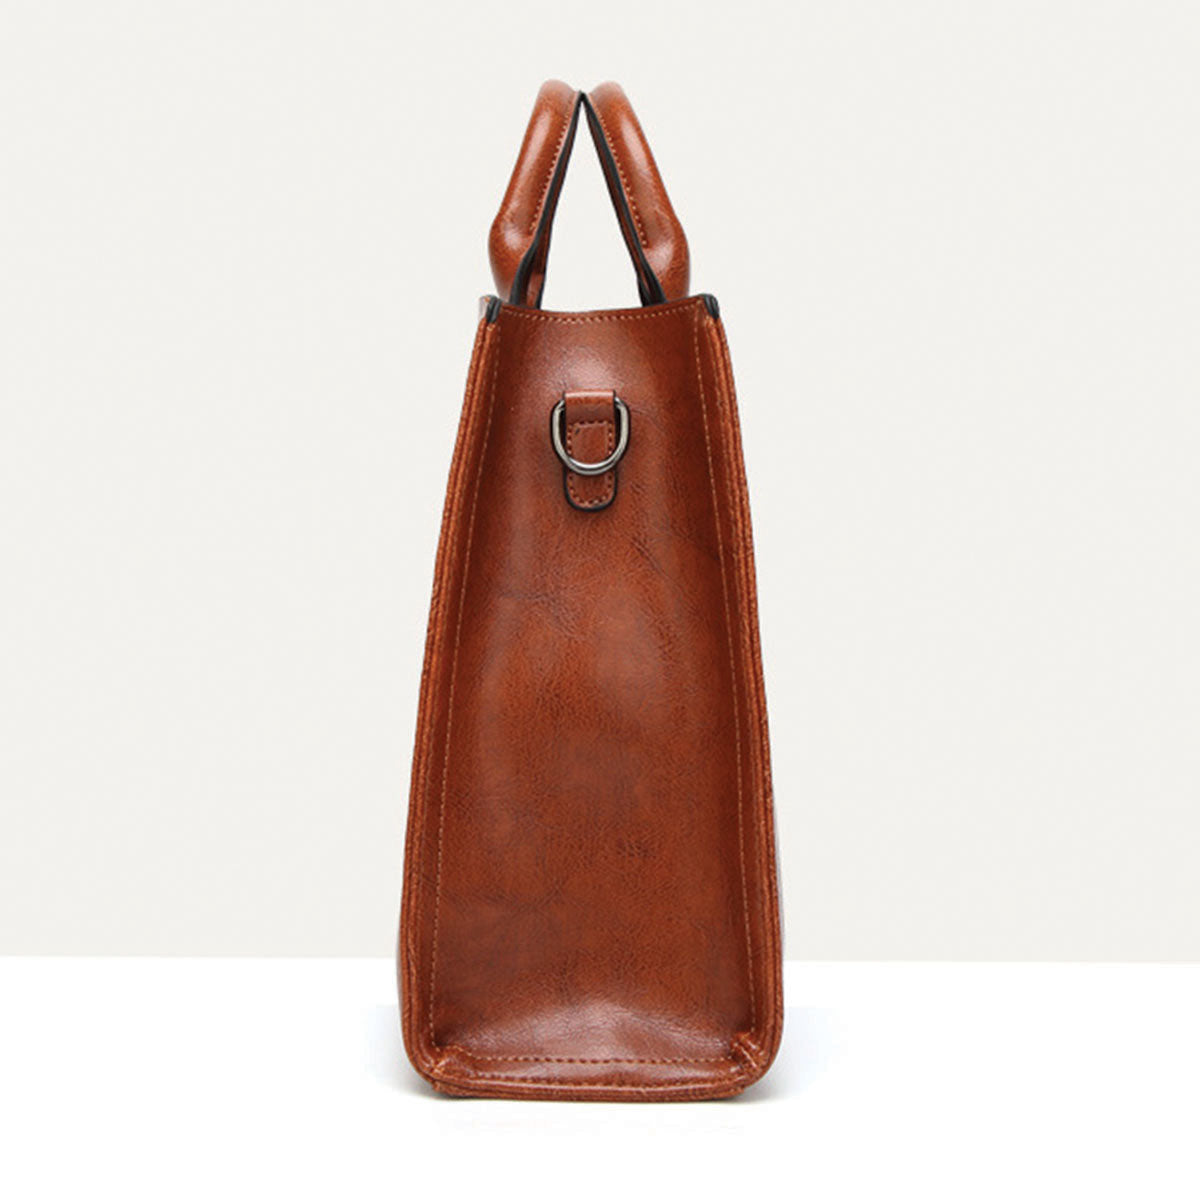 Votre meilleur compagnon - Shar Pei Luxury Handbag V2